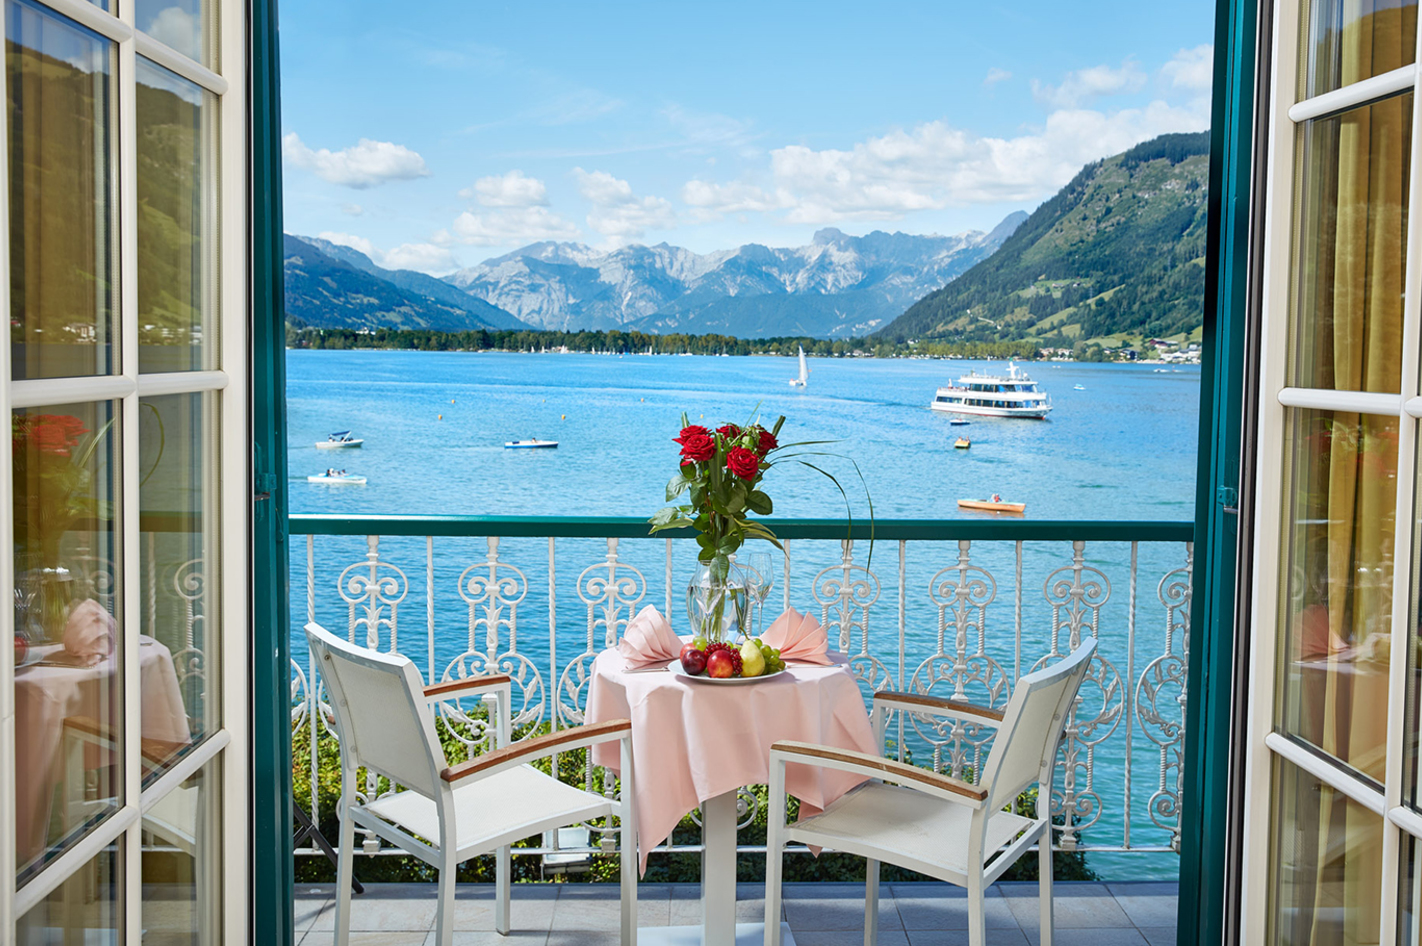 Romantischer Kurzurlaub am Zeller See für 2 - Tage zum Verlieben!